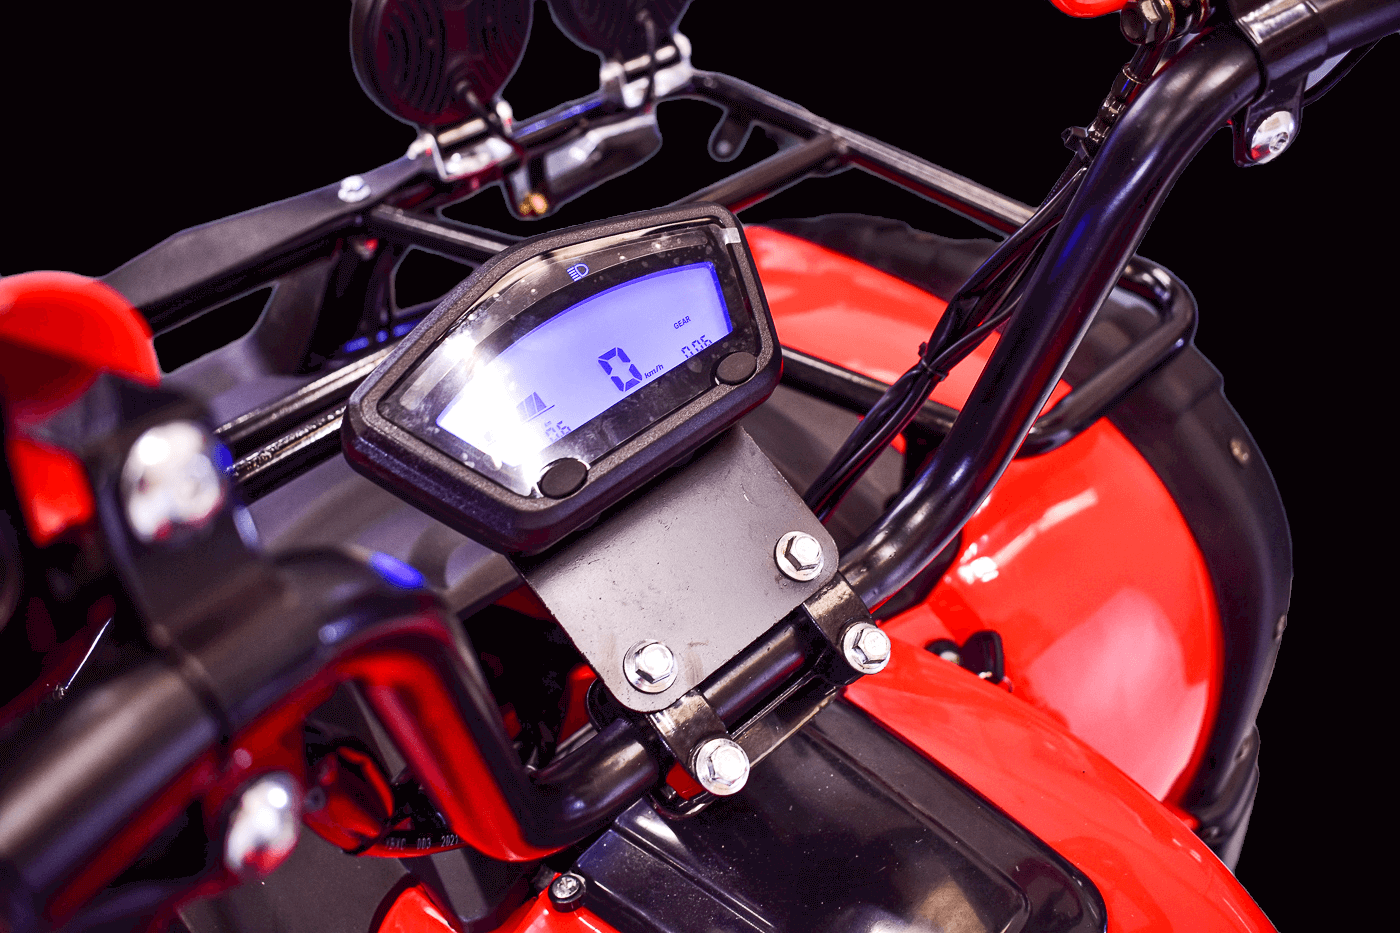 Display LCD Eco Rider